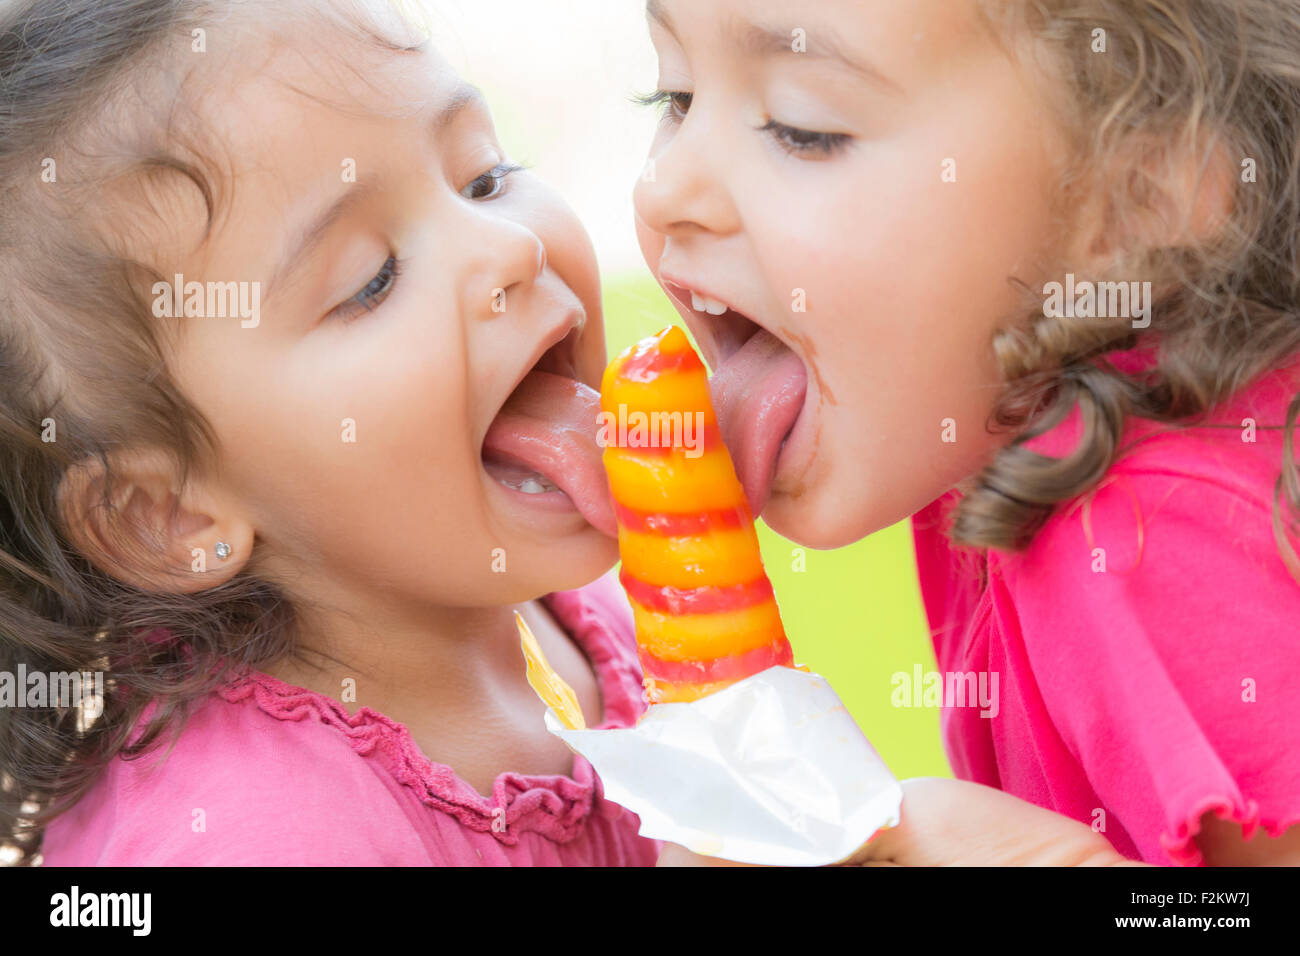 Zwei kleine Schwestern gemeinsam essen ein Eis am Stiel Stockfoto